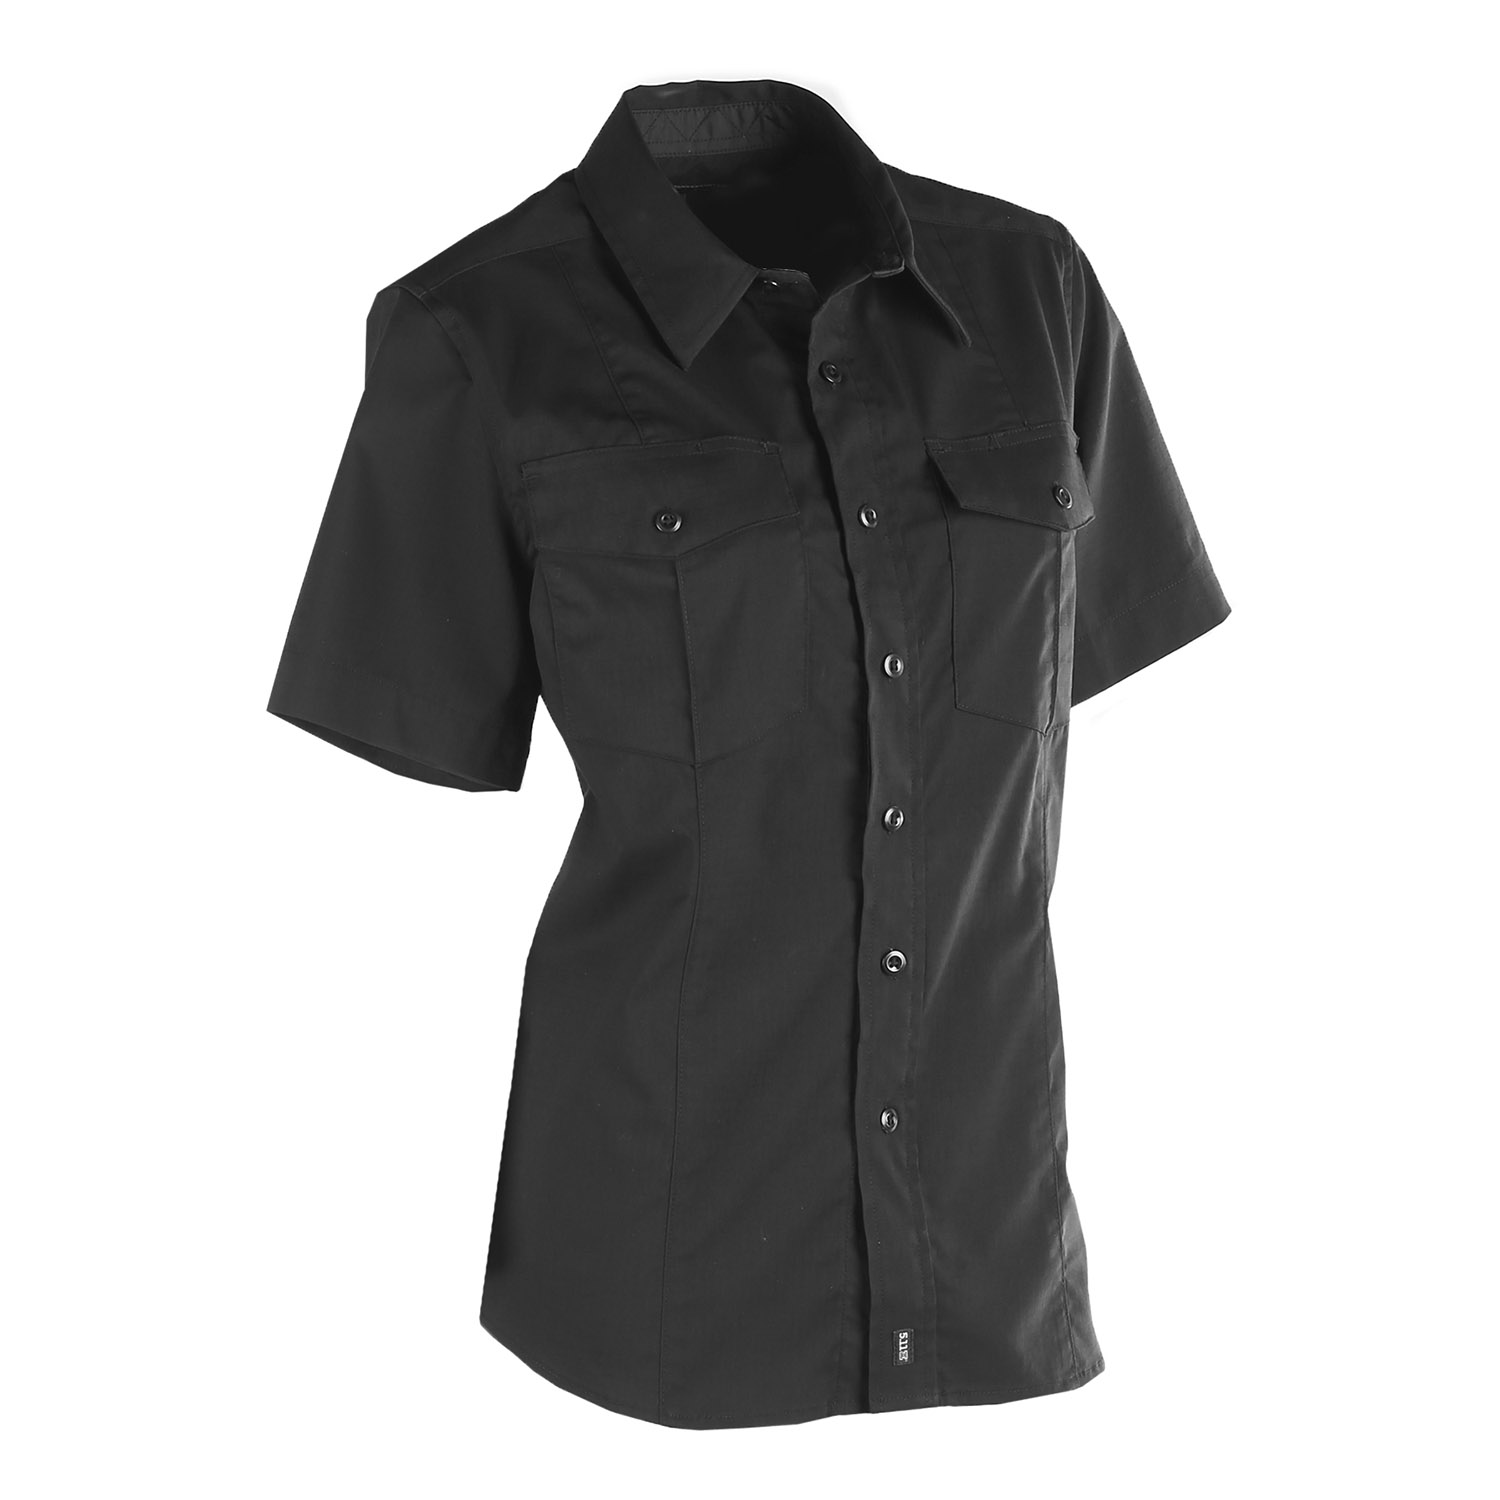 5.11 Tactical Women's Short Sleeve Class A Stryke PDU Shirt